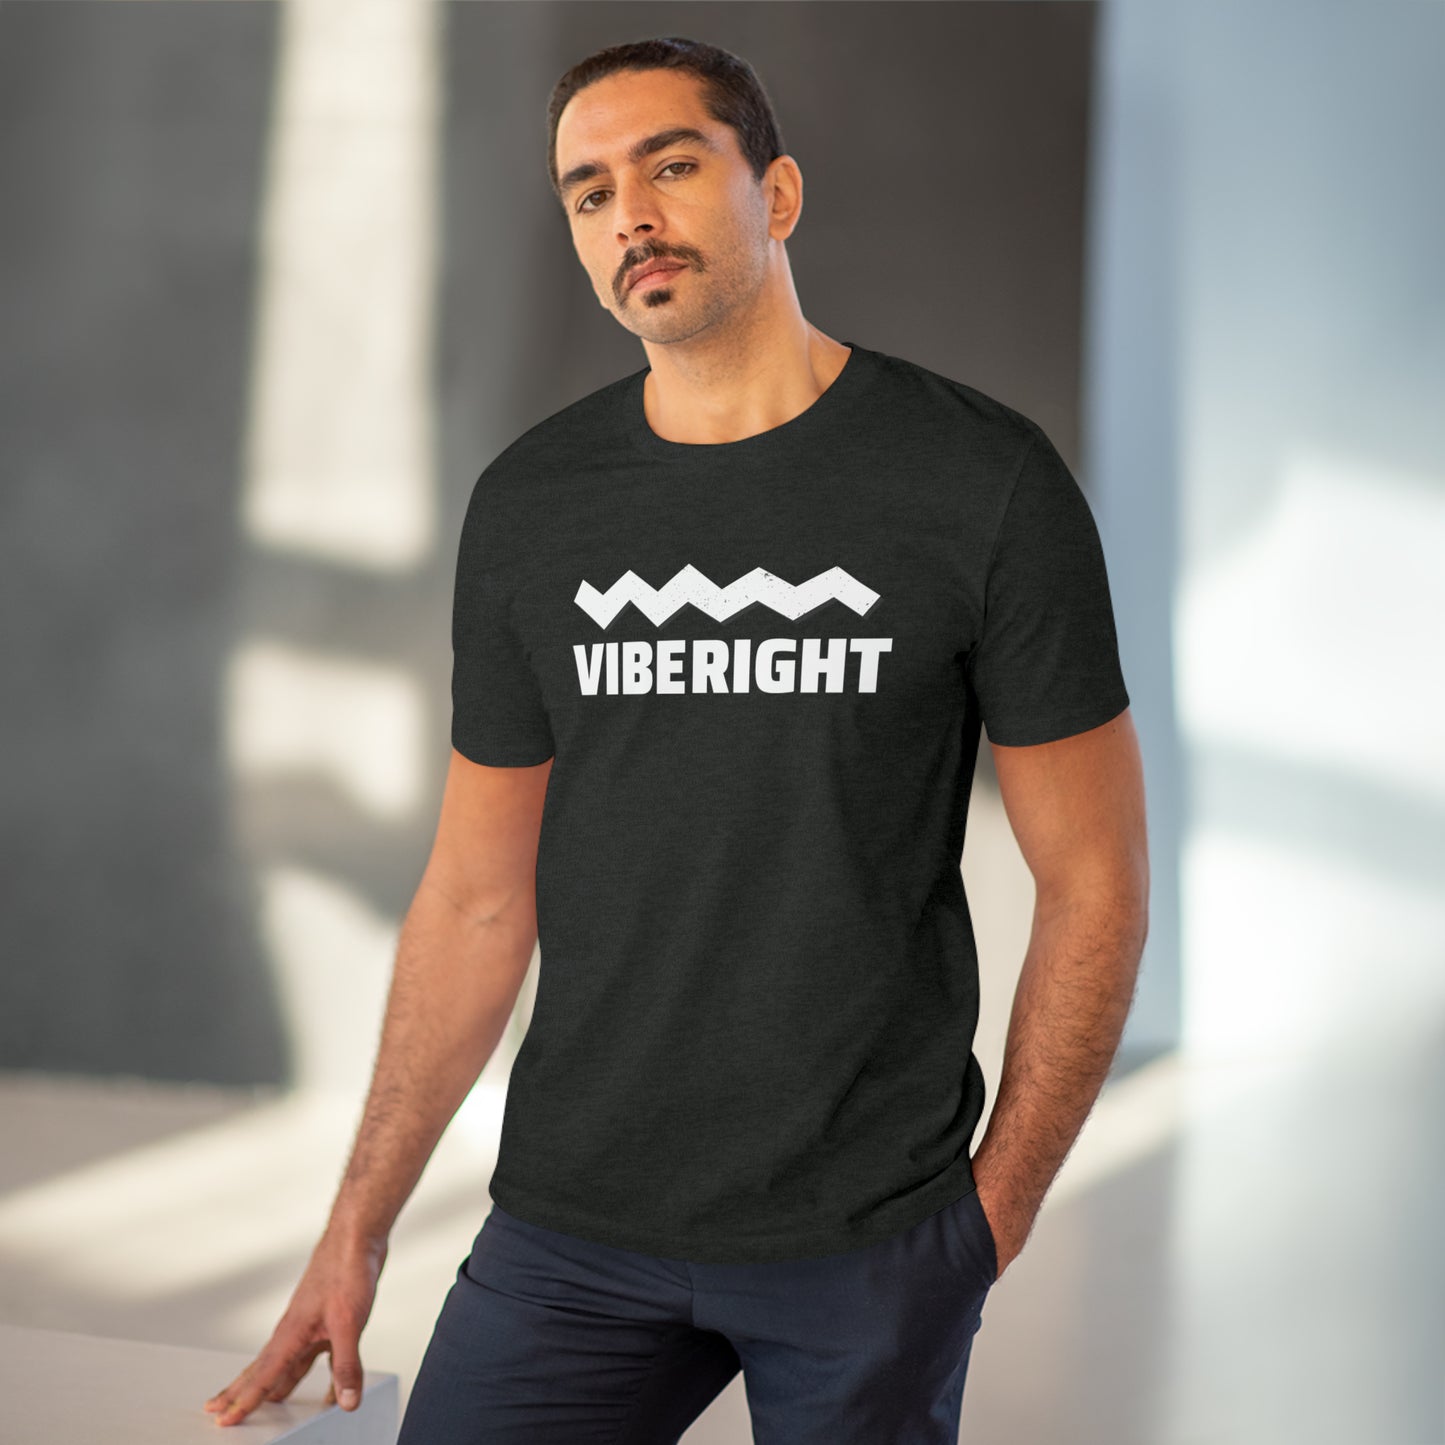 VibeRight T-shirt - Unisex